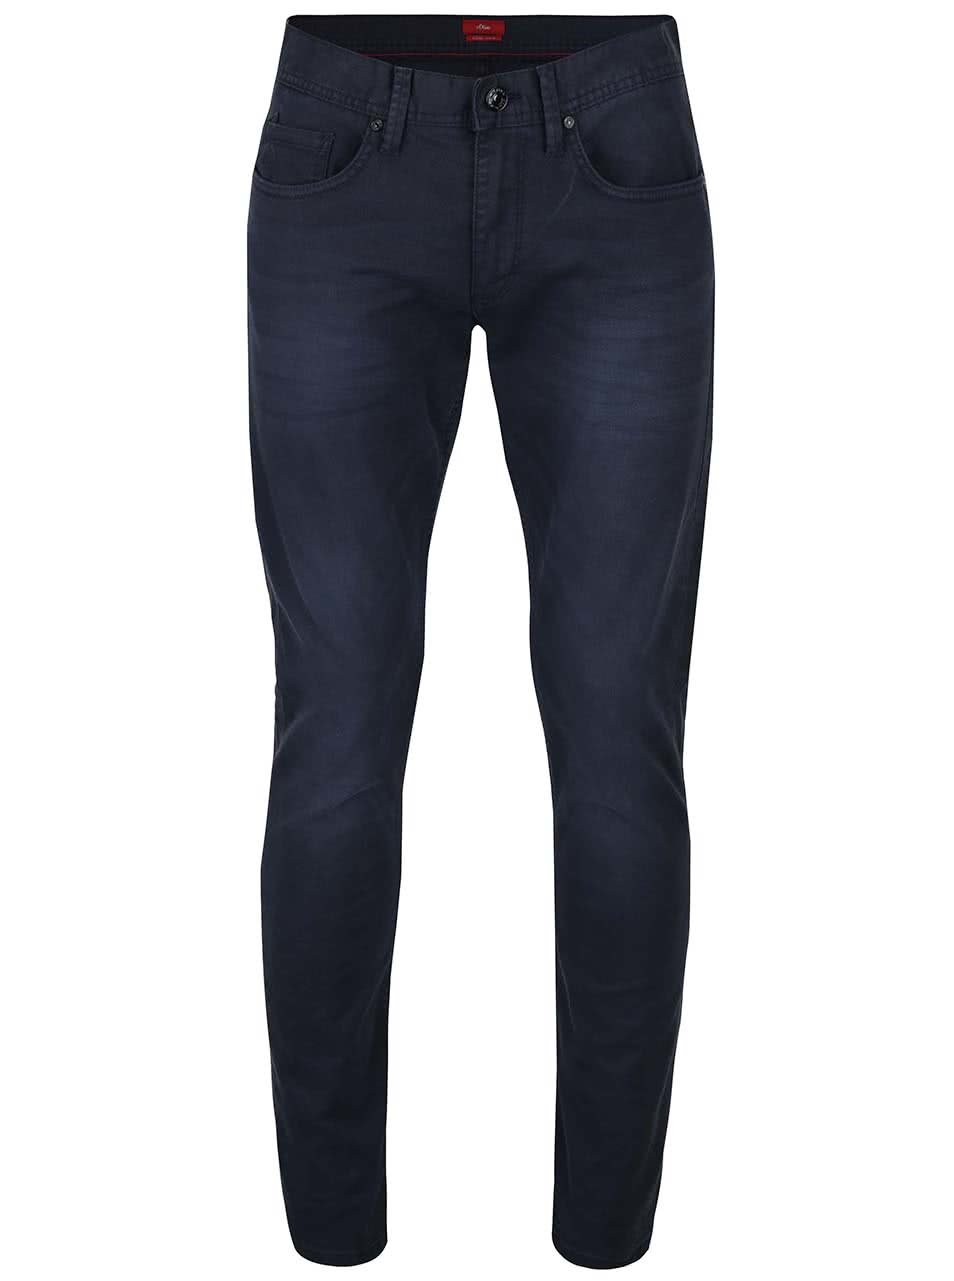 Modré pánské džíny s vyšisovaným efektem s.Oliver Rick